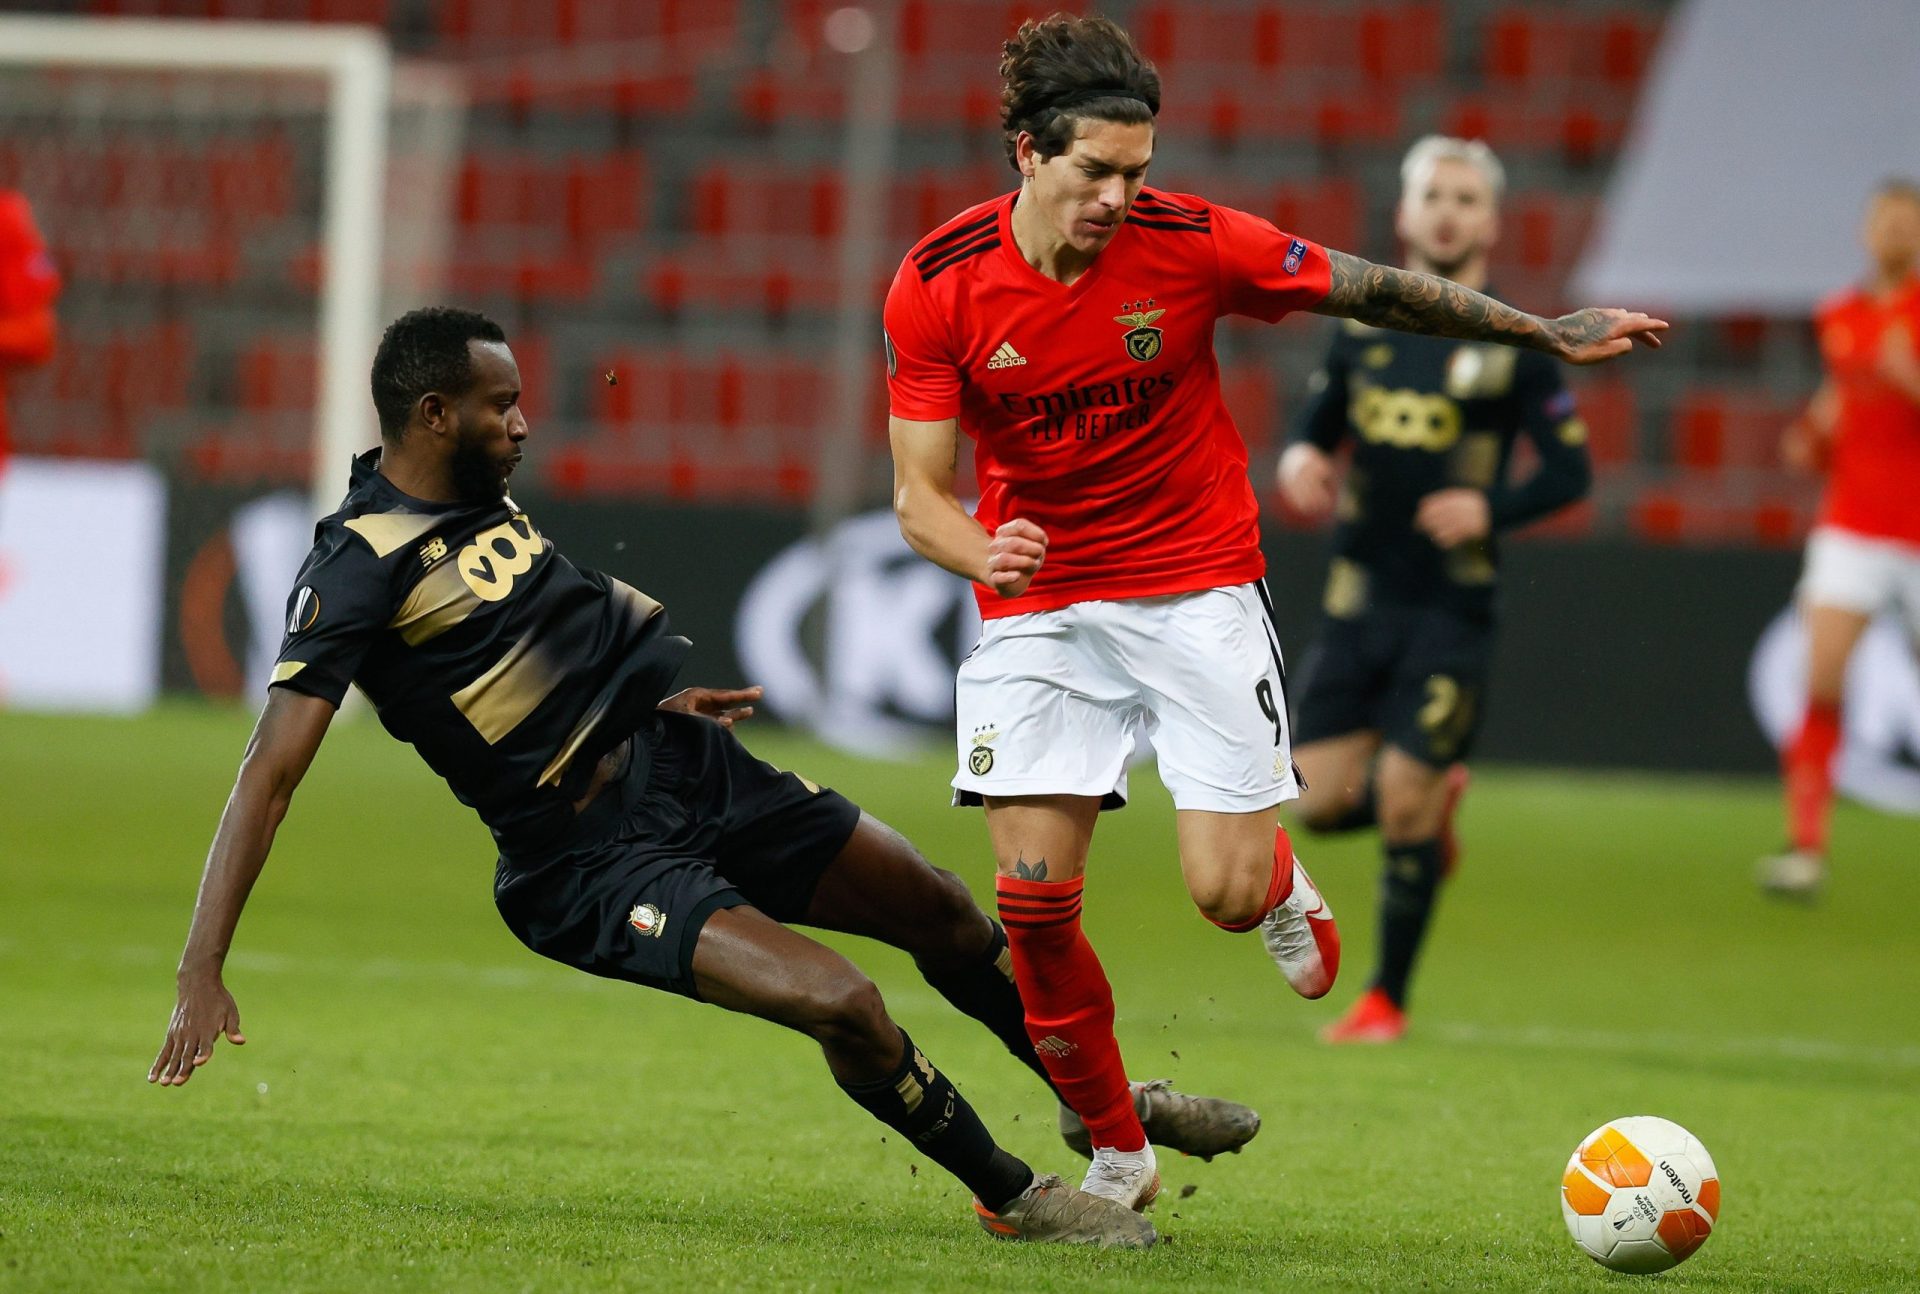 Benfica empata com Standard Liège e termina fase de grupos em segundo lugar